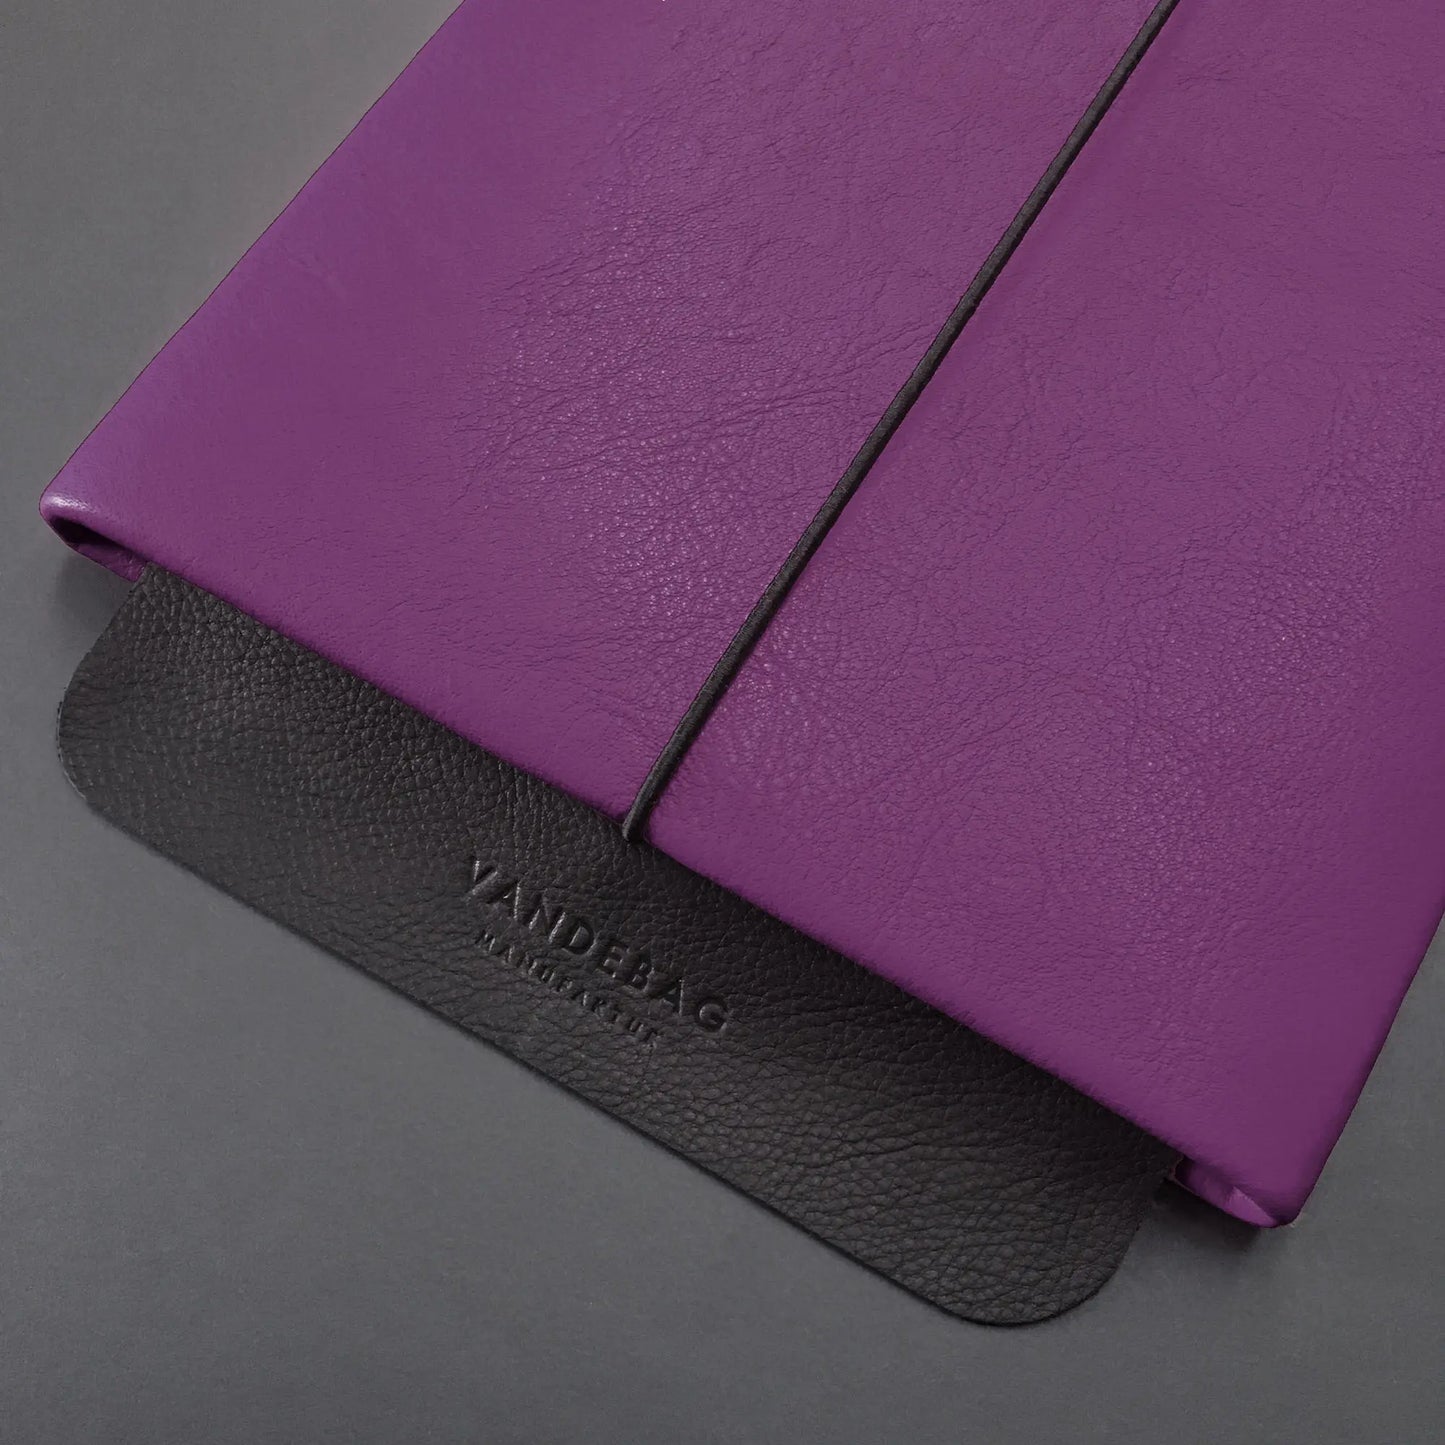 iPadhülle aus Leder in sattem lila mit einer schwarzen Verschlussklappe auf der Vandebag Manufaktur eingeprägt ist.